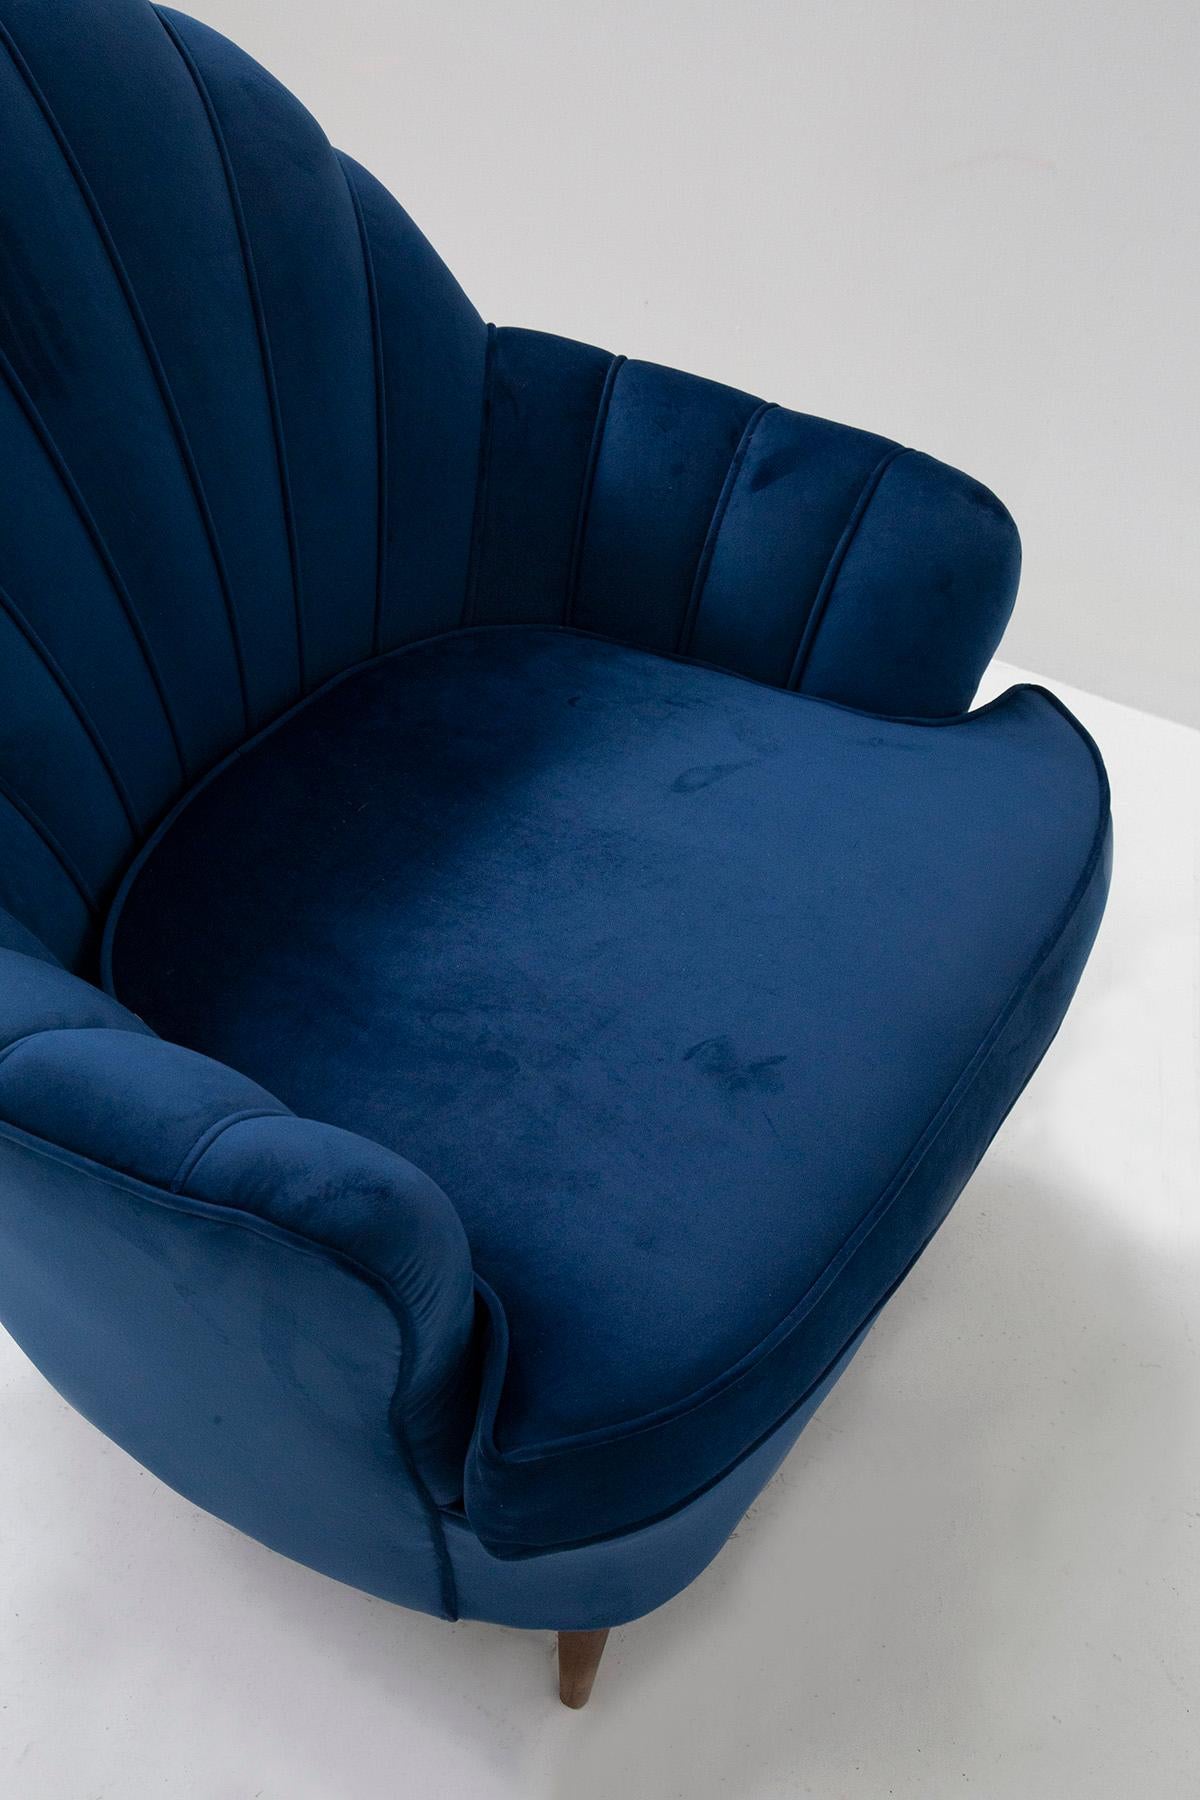 Pair of Midcentury Italian Shell Chairs in Blue Velvet 5